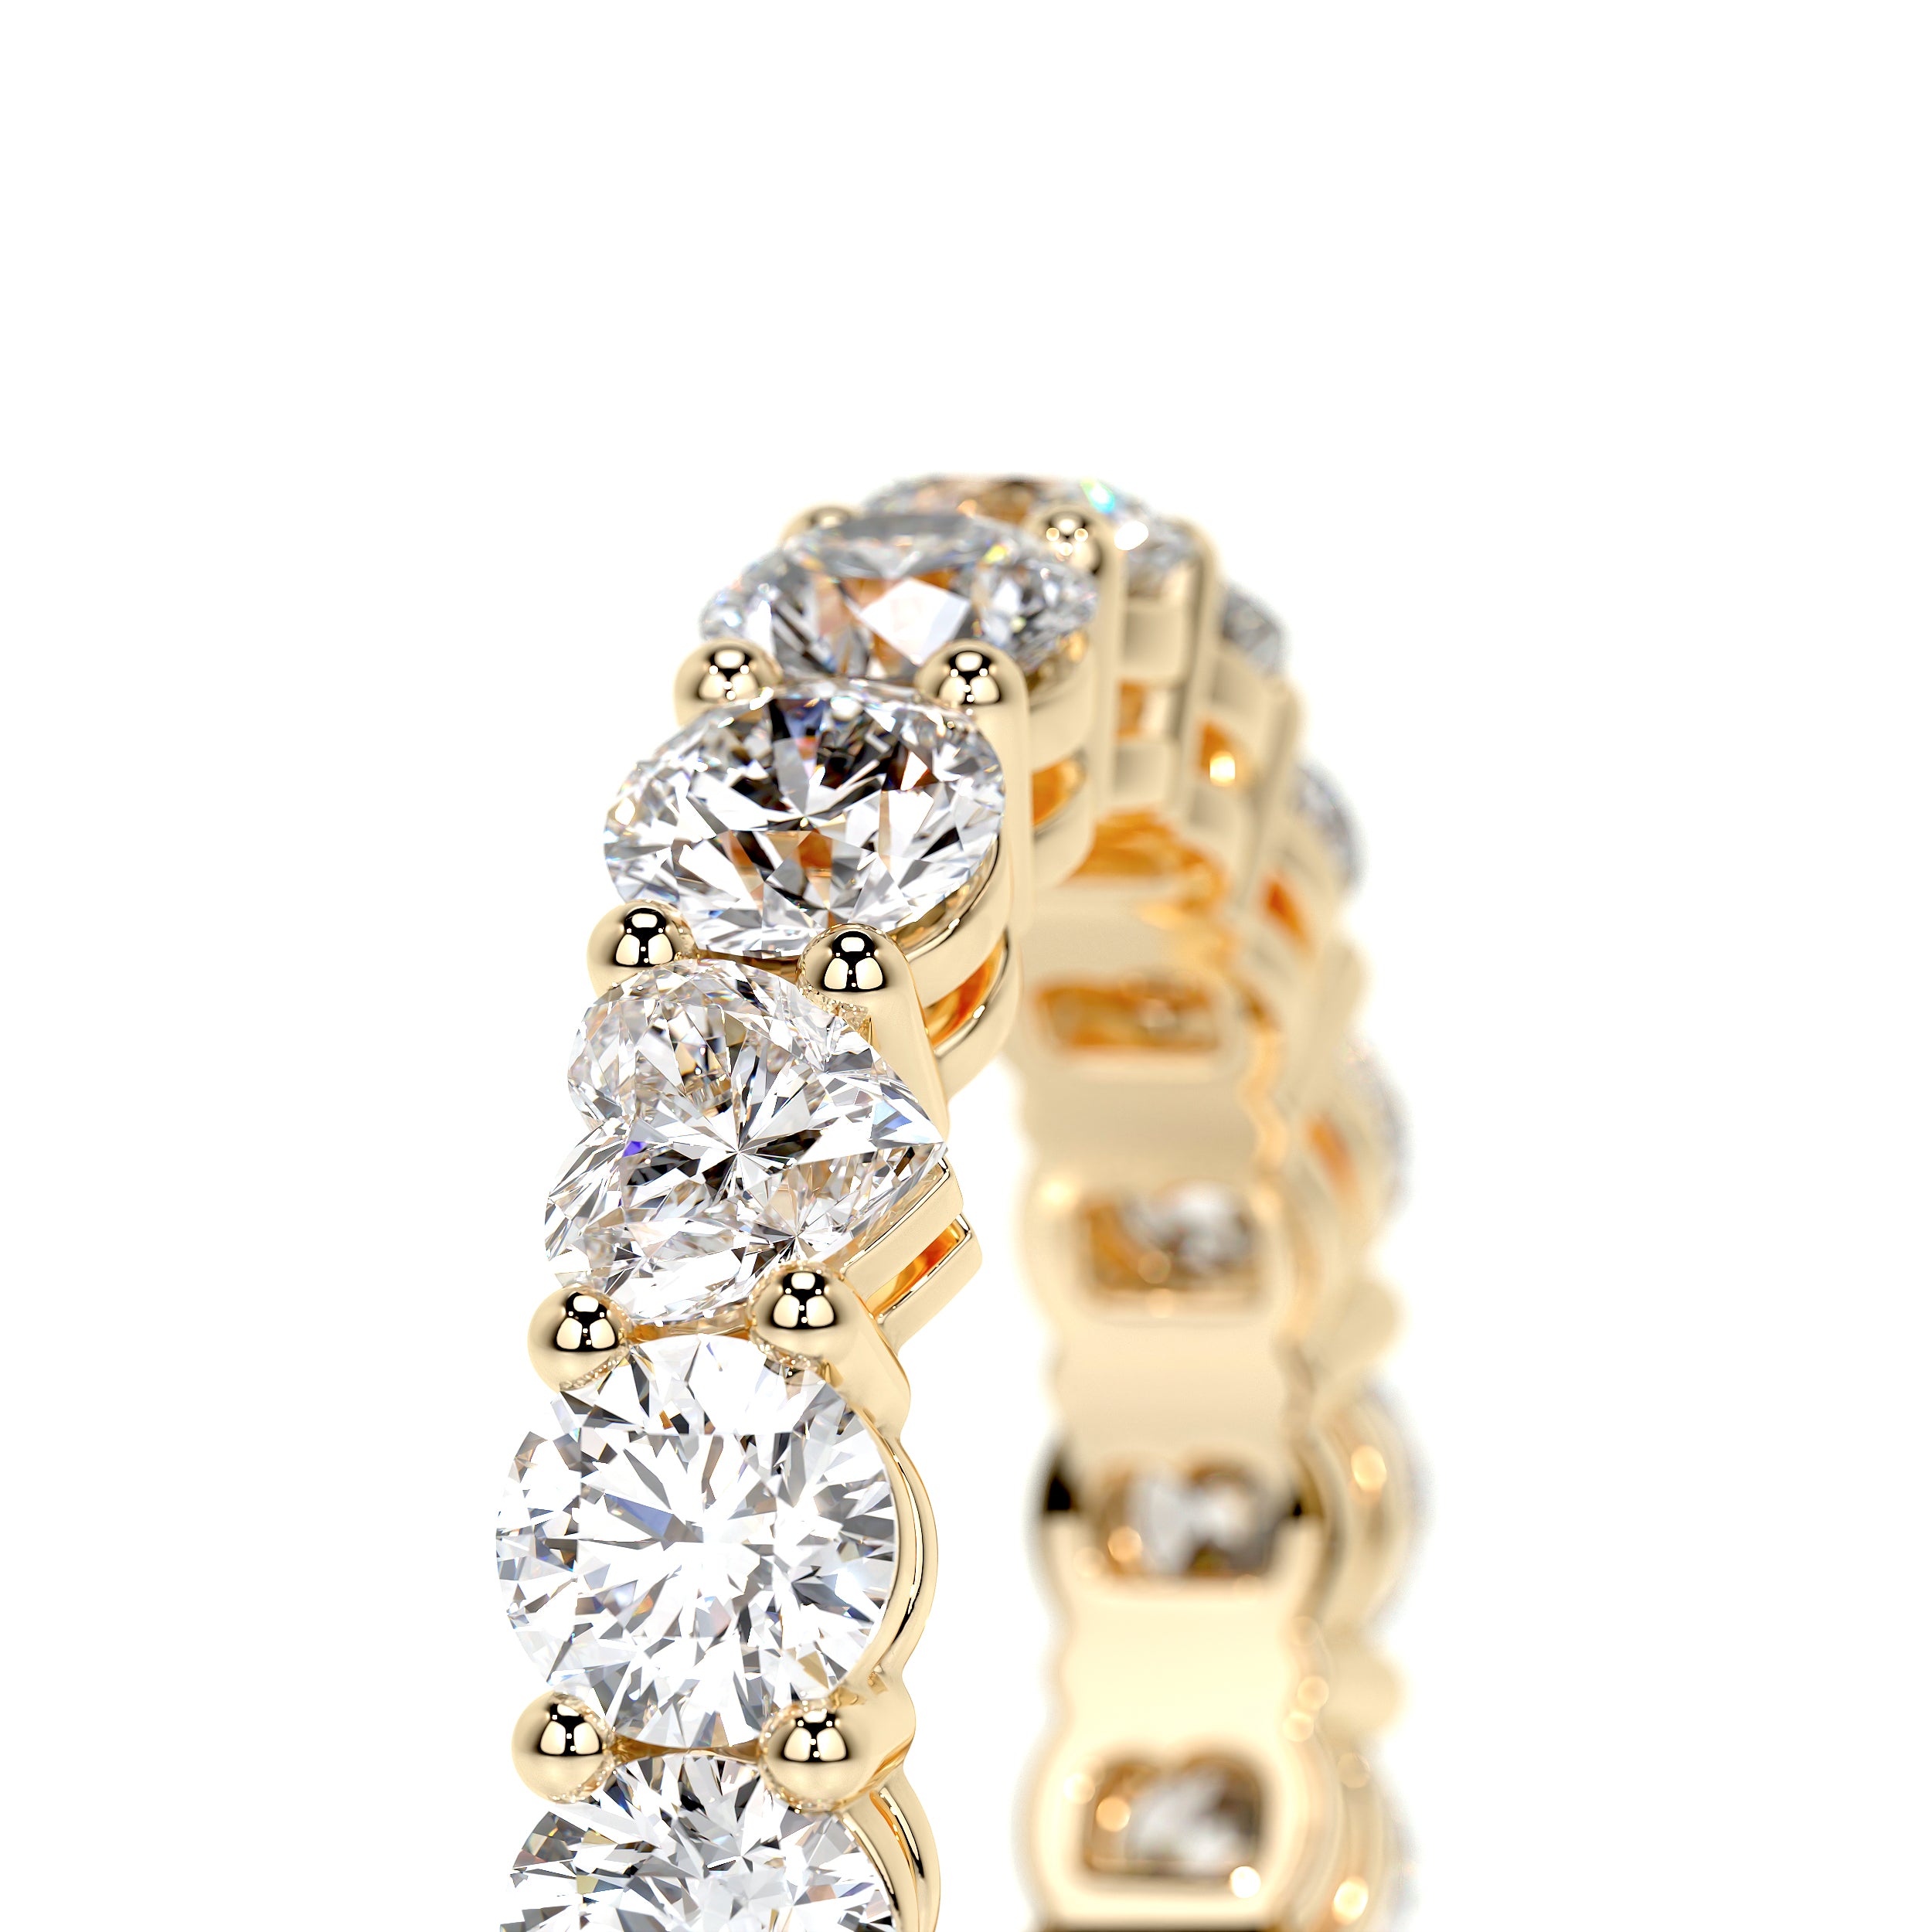 Anne Lab Grown Diamond Wedding Ring   (4 Carat) -18K Yellow Gold